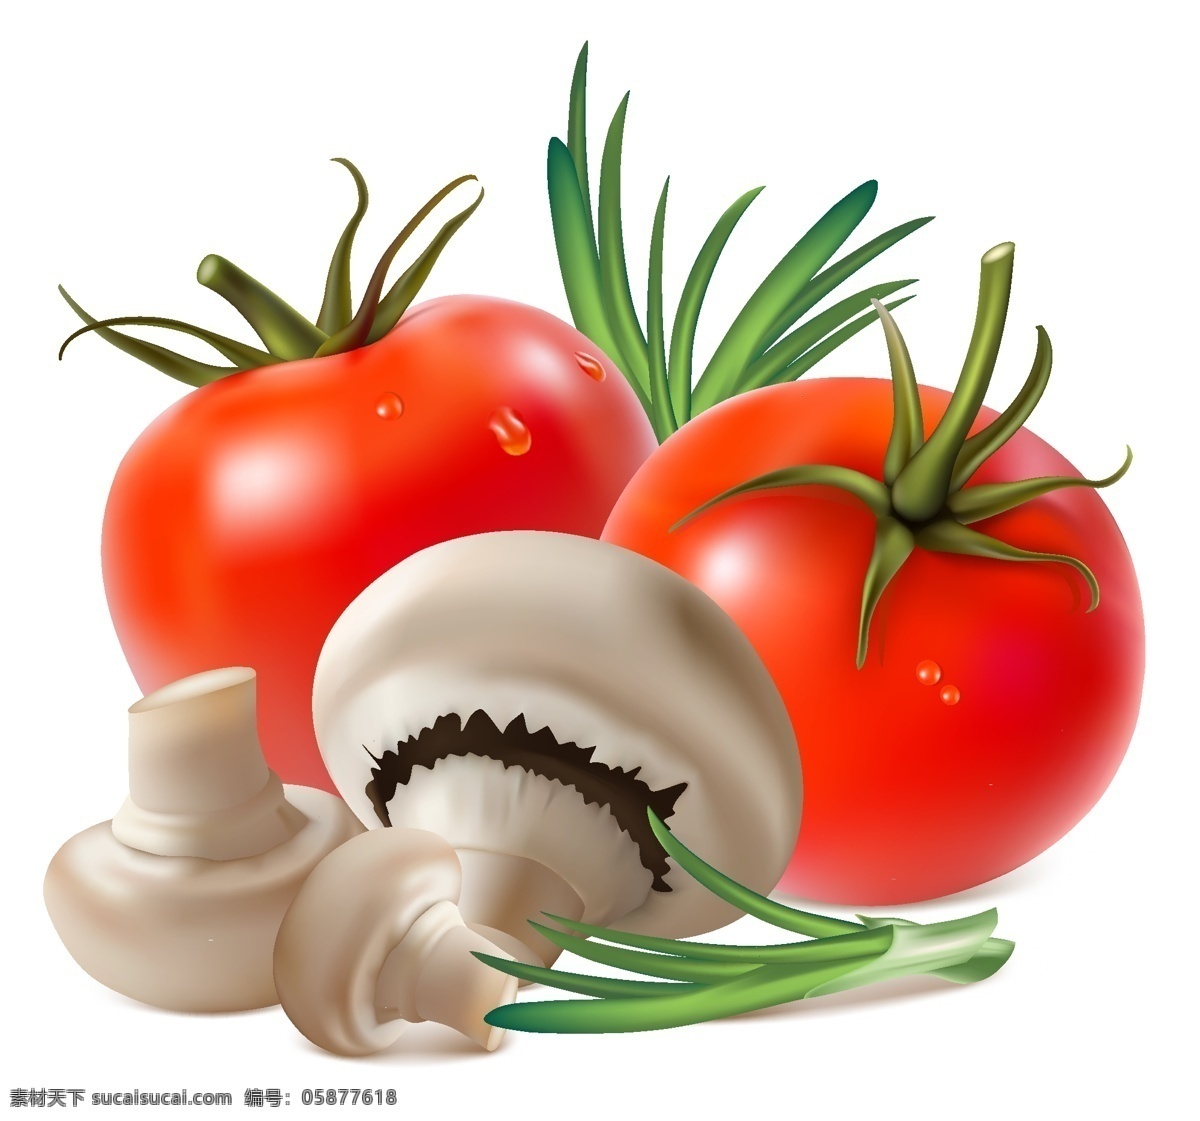 手绘蔬菜矢量 蘑菇 西红柿 蔬菜 背景 底纹 矢量 蔬菜水果 卡通设计